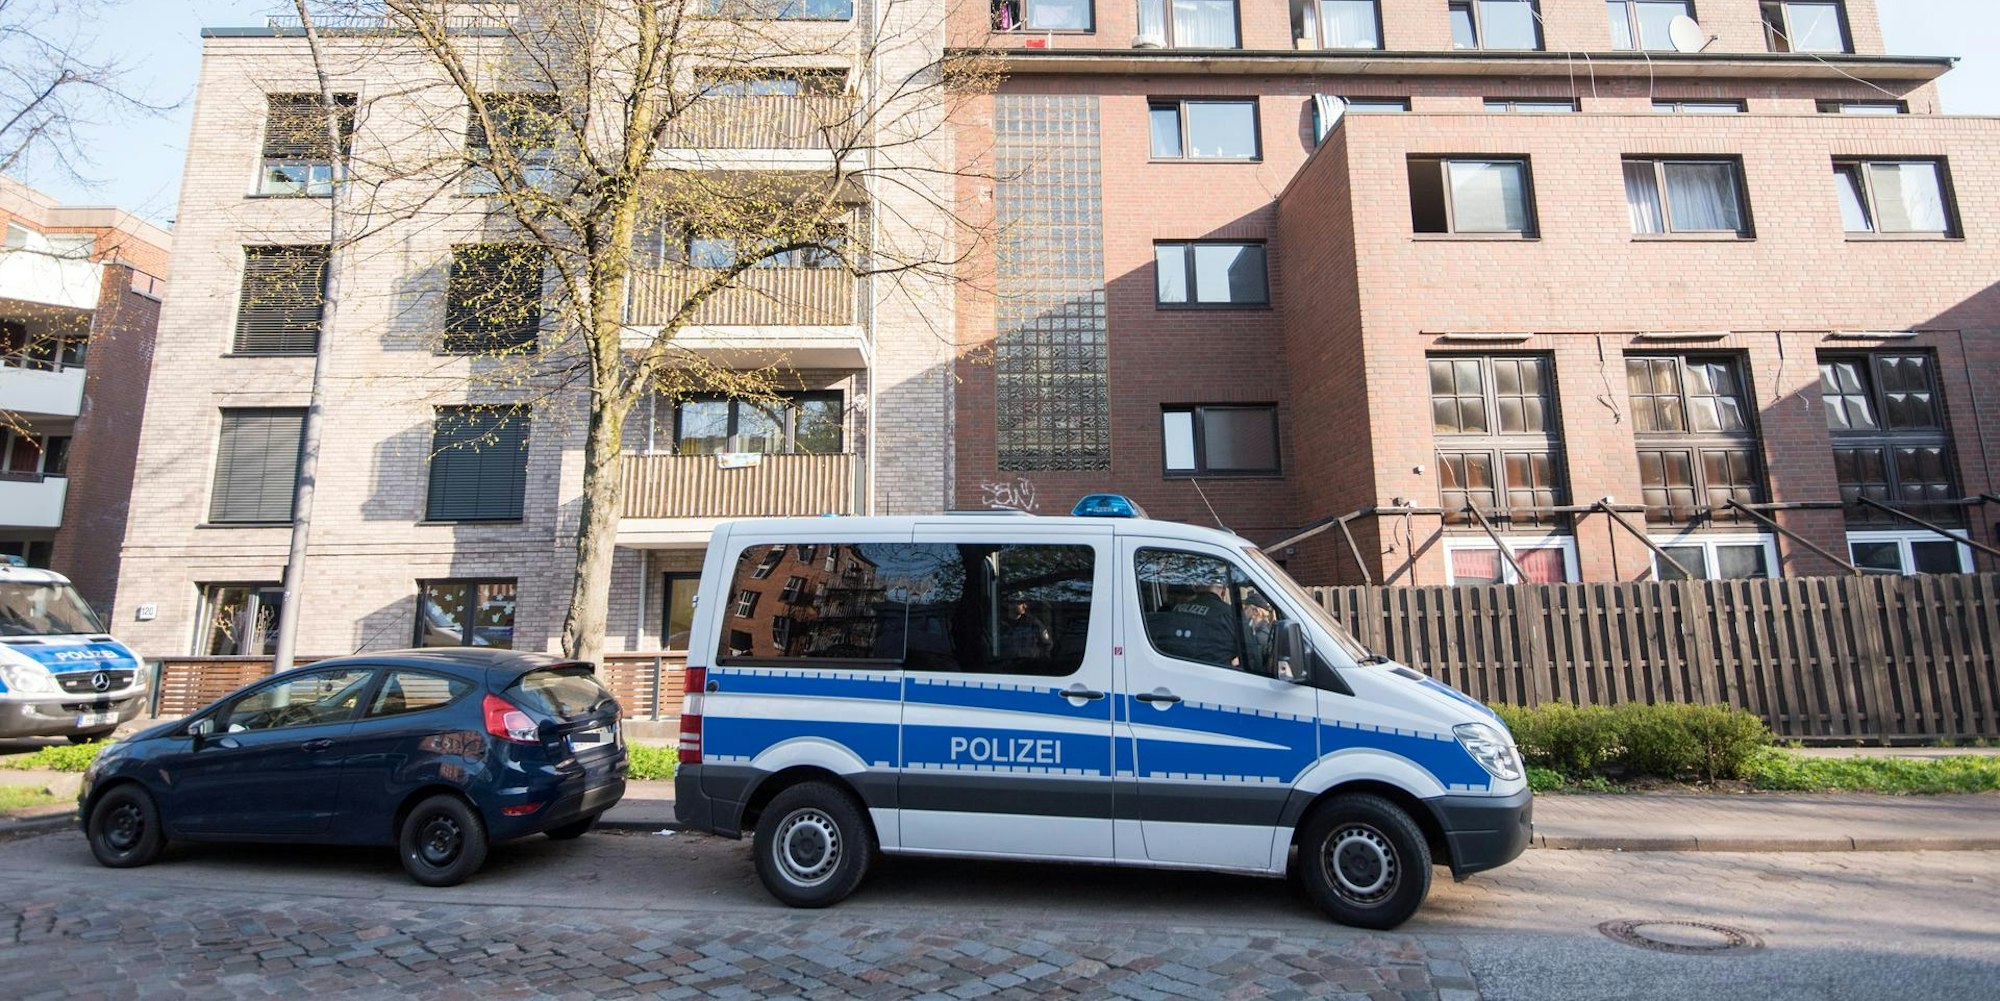 Polizei_Symbol_Haus1